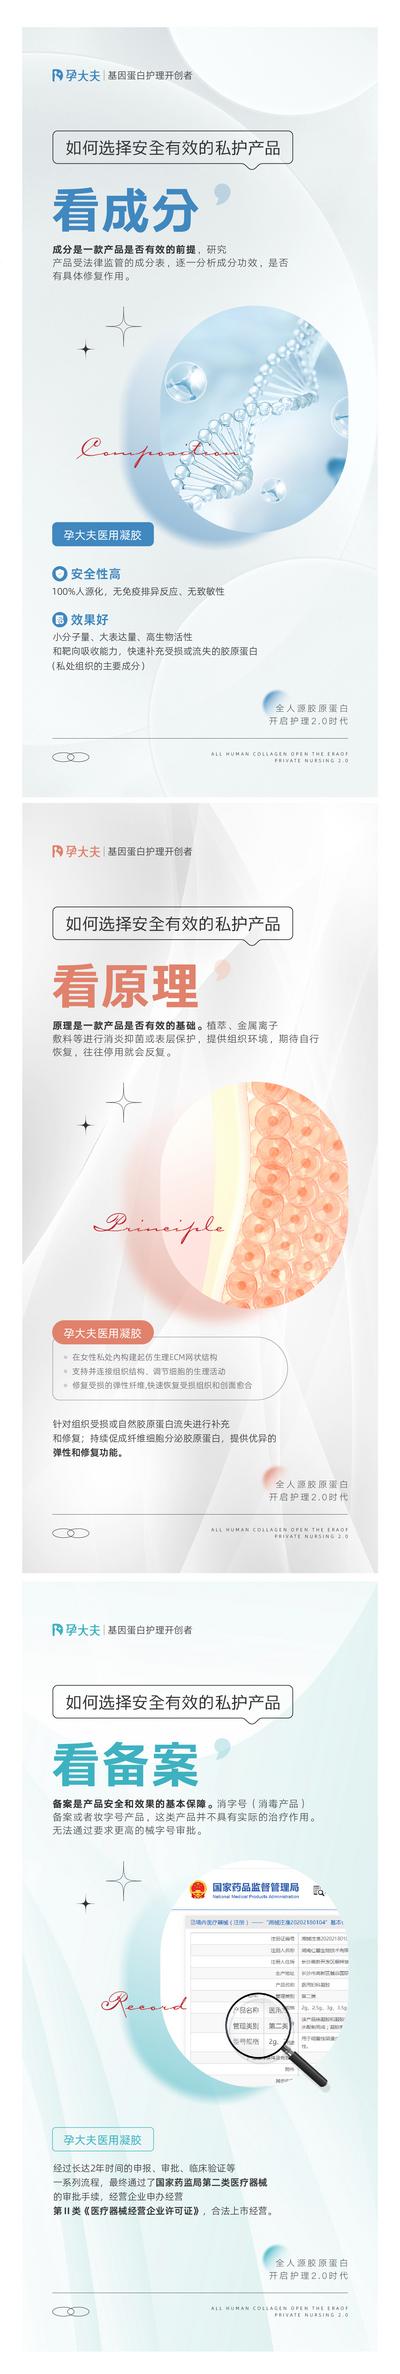 南门网 海报 医美 女性 私护 健康 产品 宣传 介绍 成分 科普 简约 系列